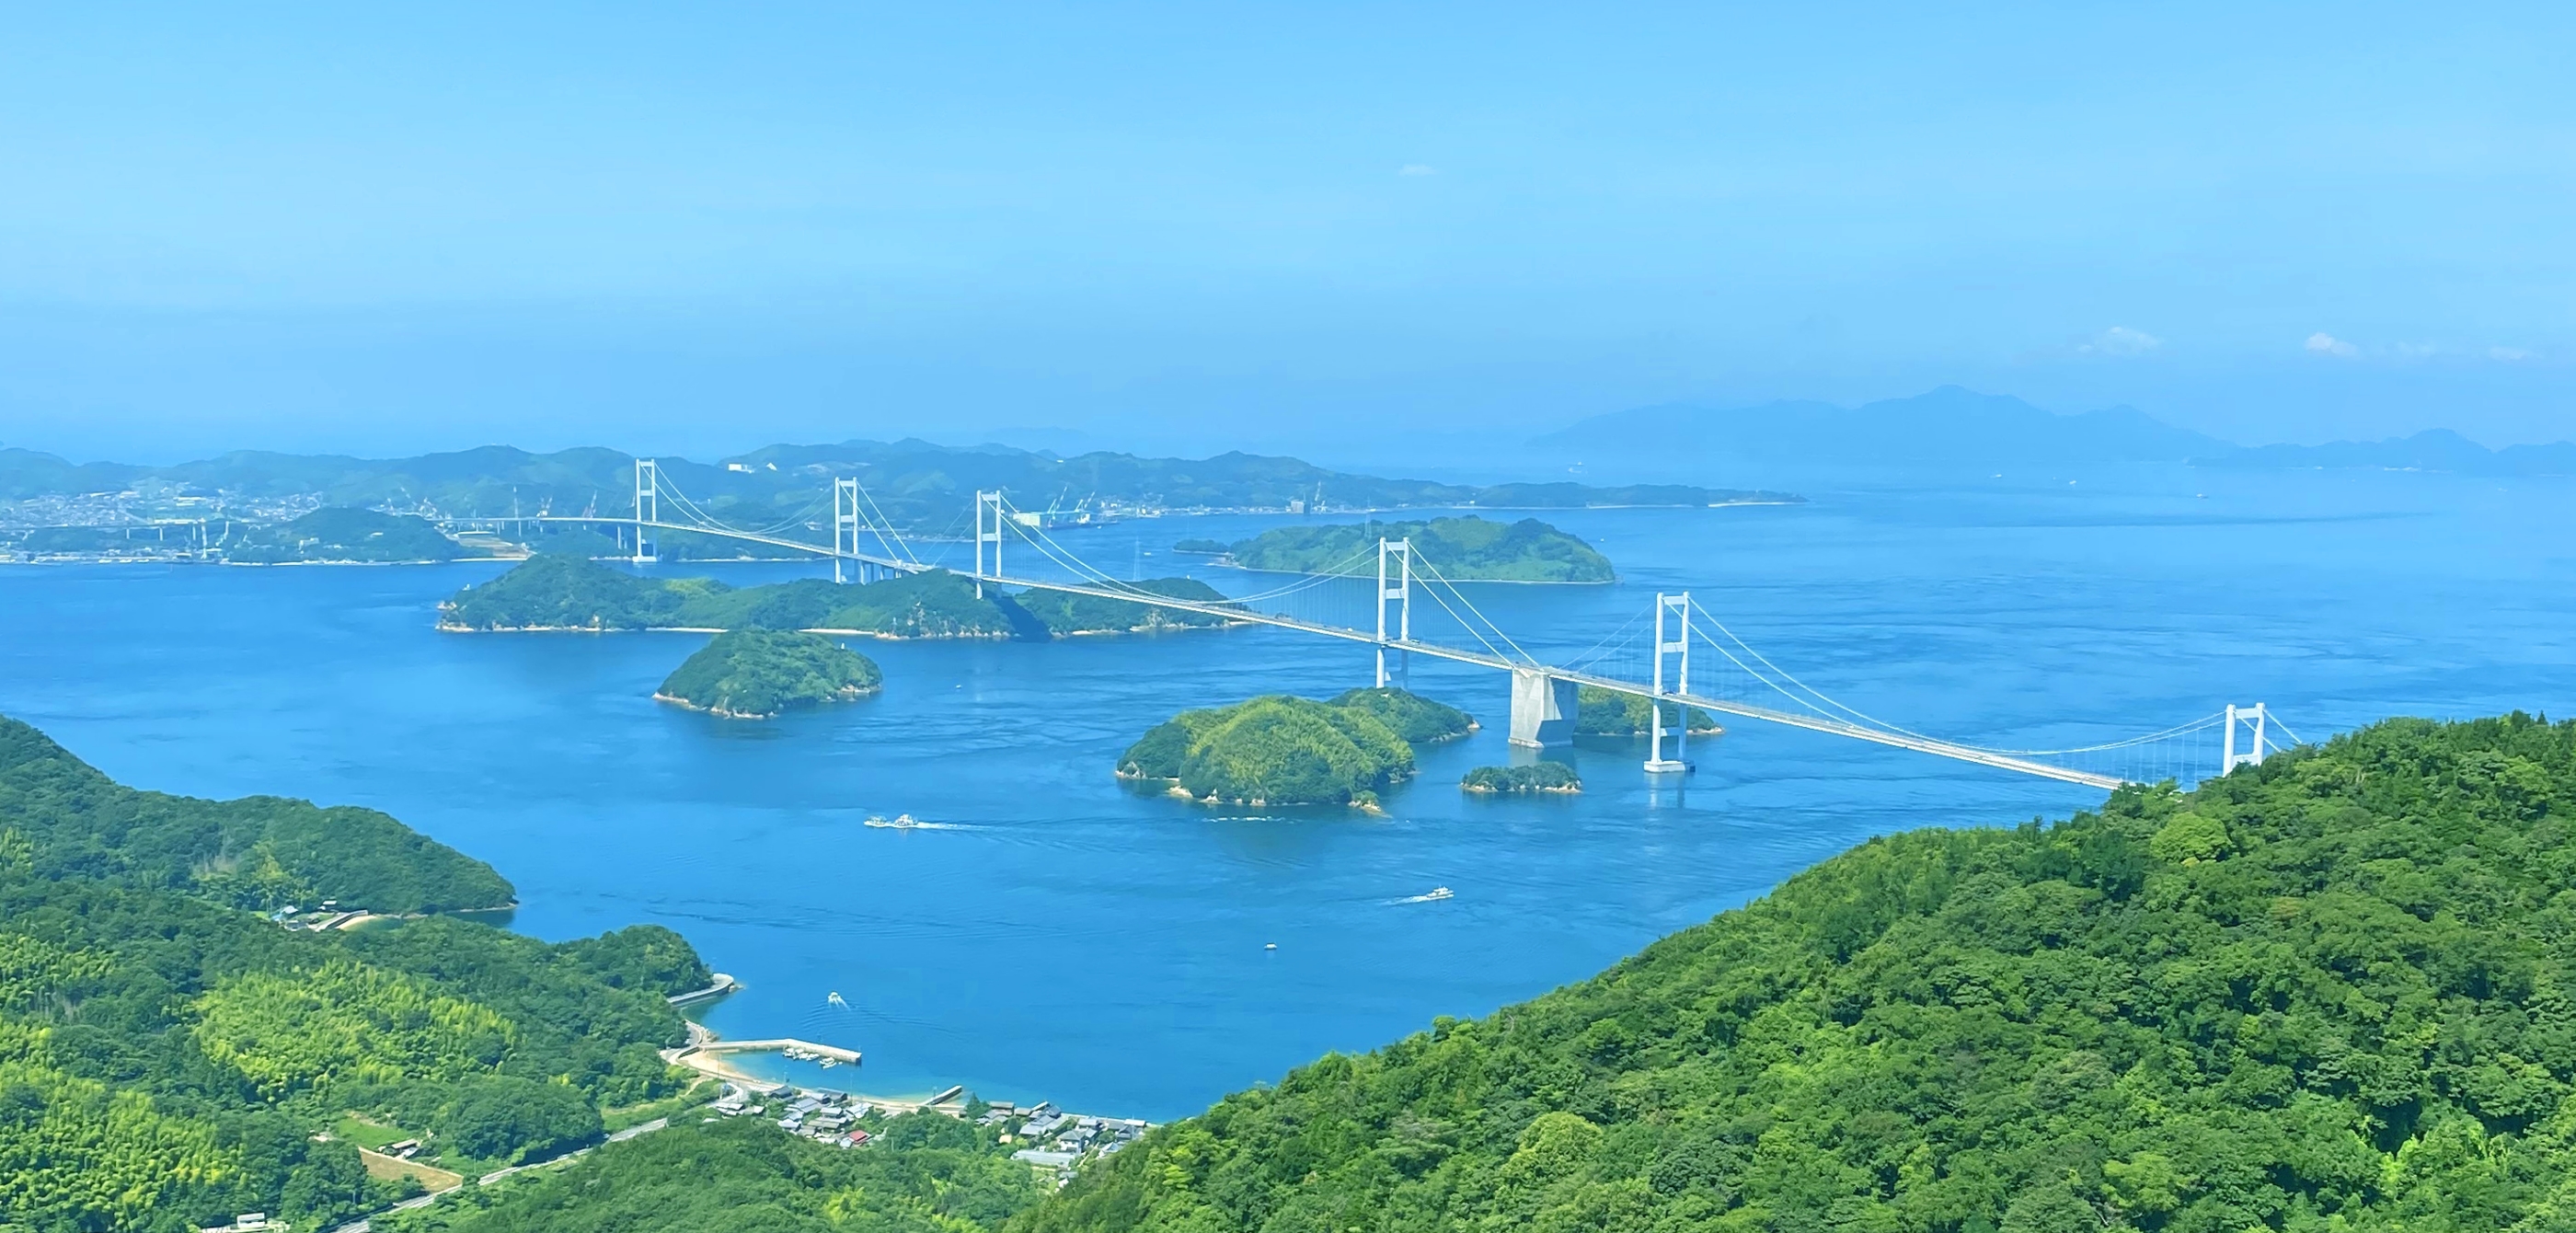 瀬戸内の島々に、来島海峡大橋がかかっている風景